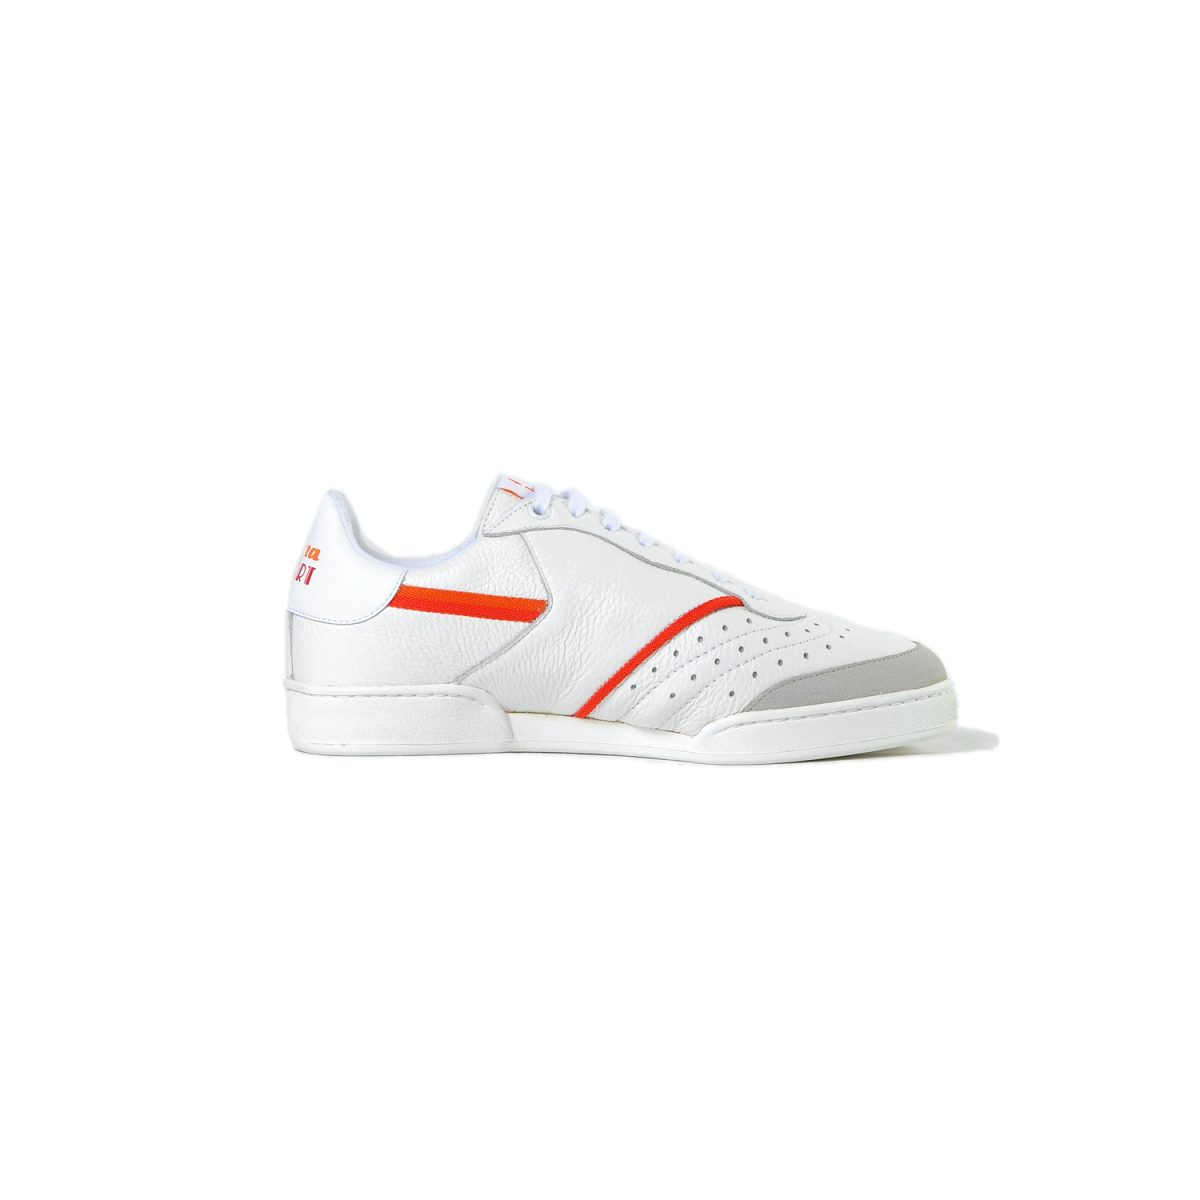 Tisza shoes - Sport - White-red-orange